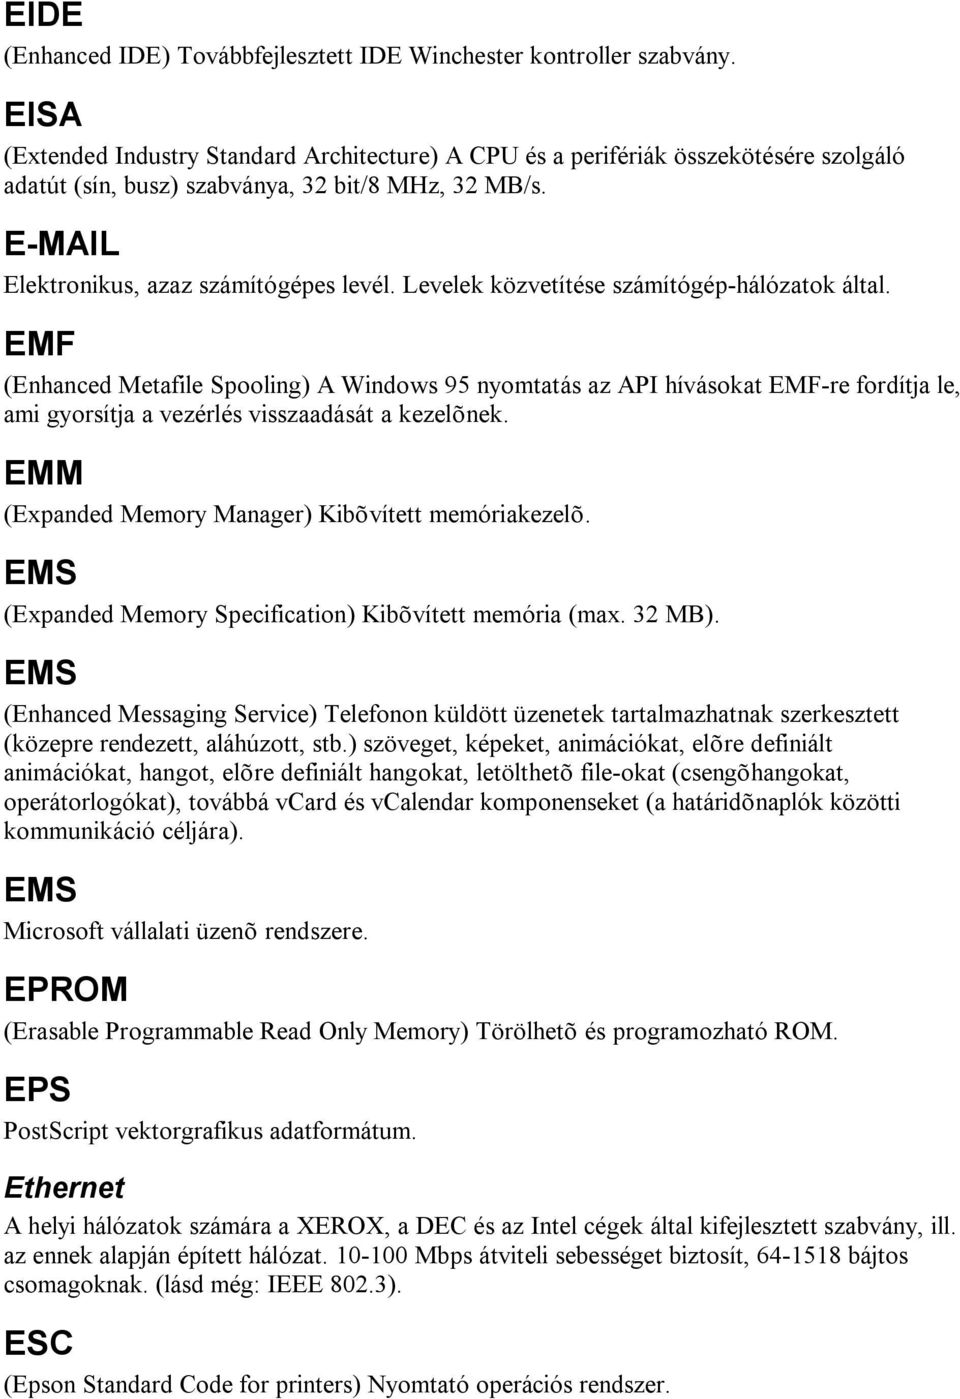 Levelek közvetítése számítógép-hálózatok által. EMF (Enhanced Metafile Spooling) A Windows 95 nyomtatás az API hívásokat EMF-re fordítja le, ami gyorsítja a vezérlés visszaadását a kezelõnek.